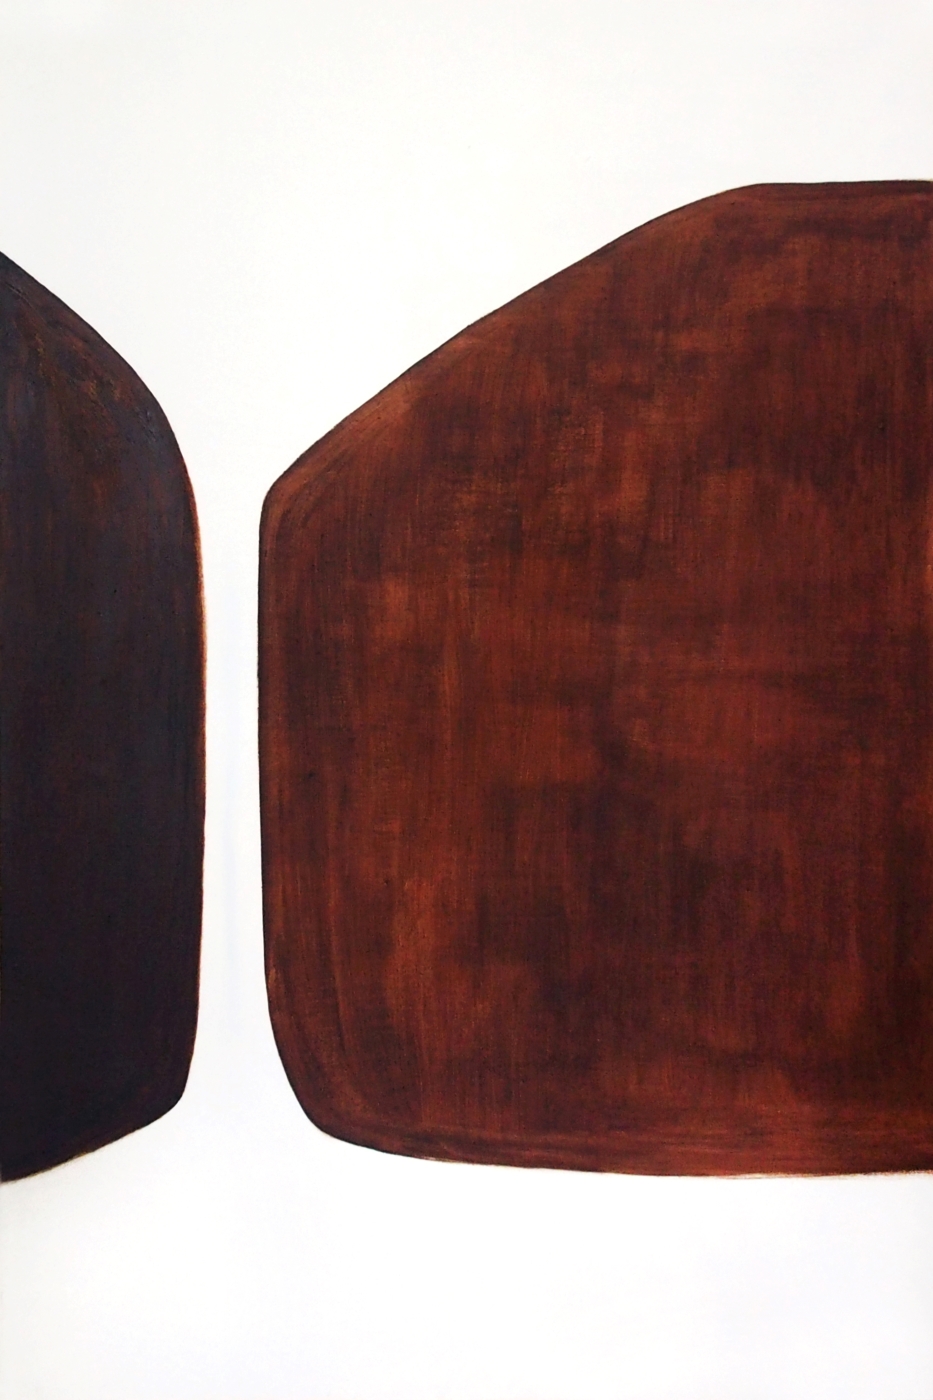 14. Wiktoria Dobrowolska, praca z cyklu Wodospady, 2020, olej na płótnie, 120 x 80 cm